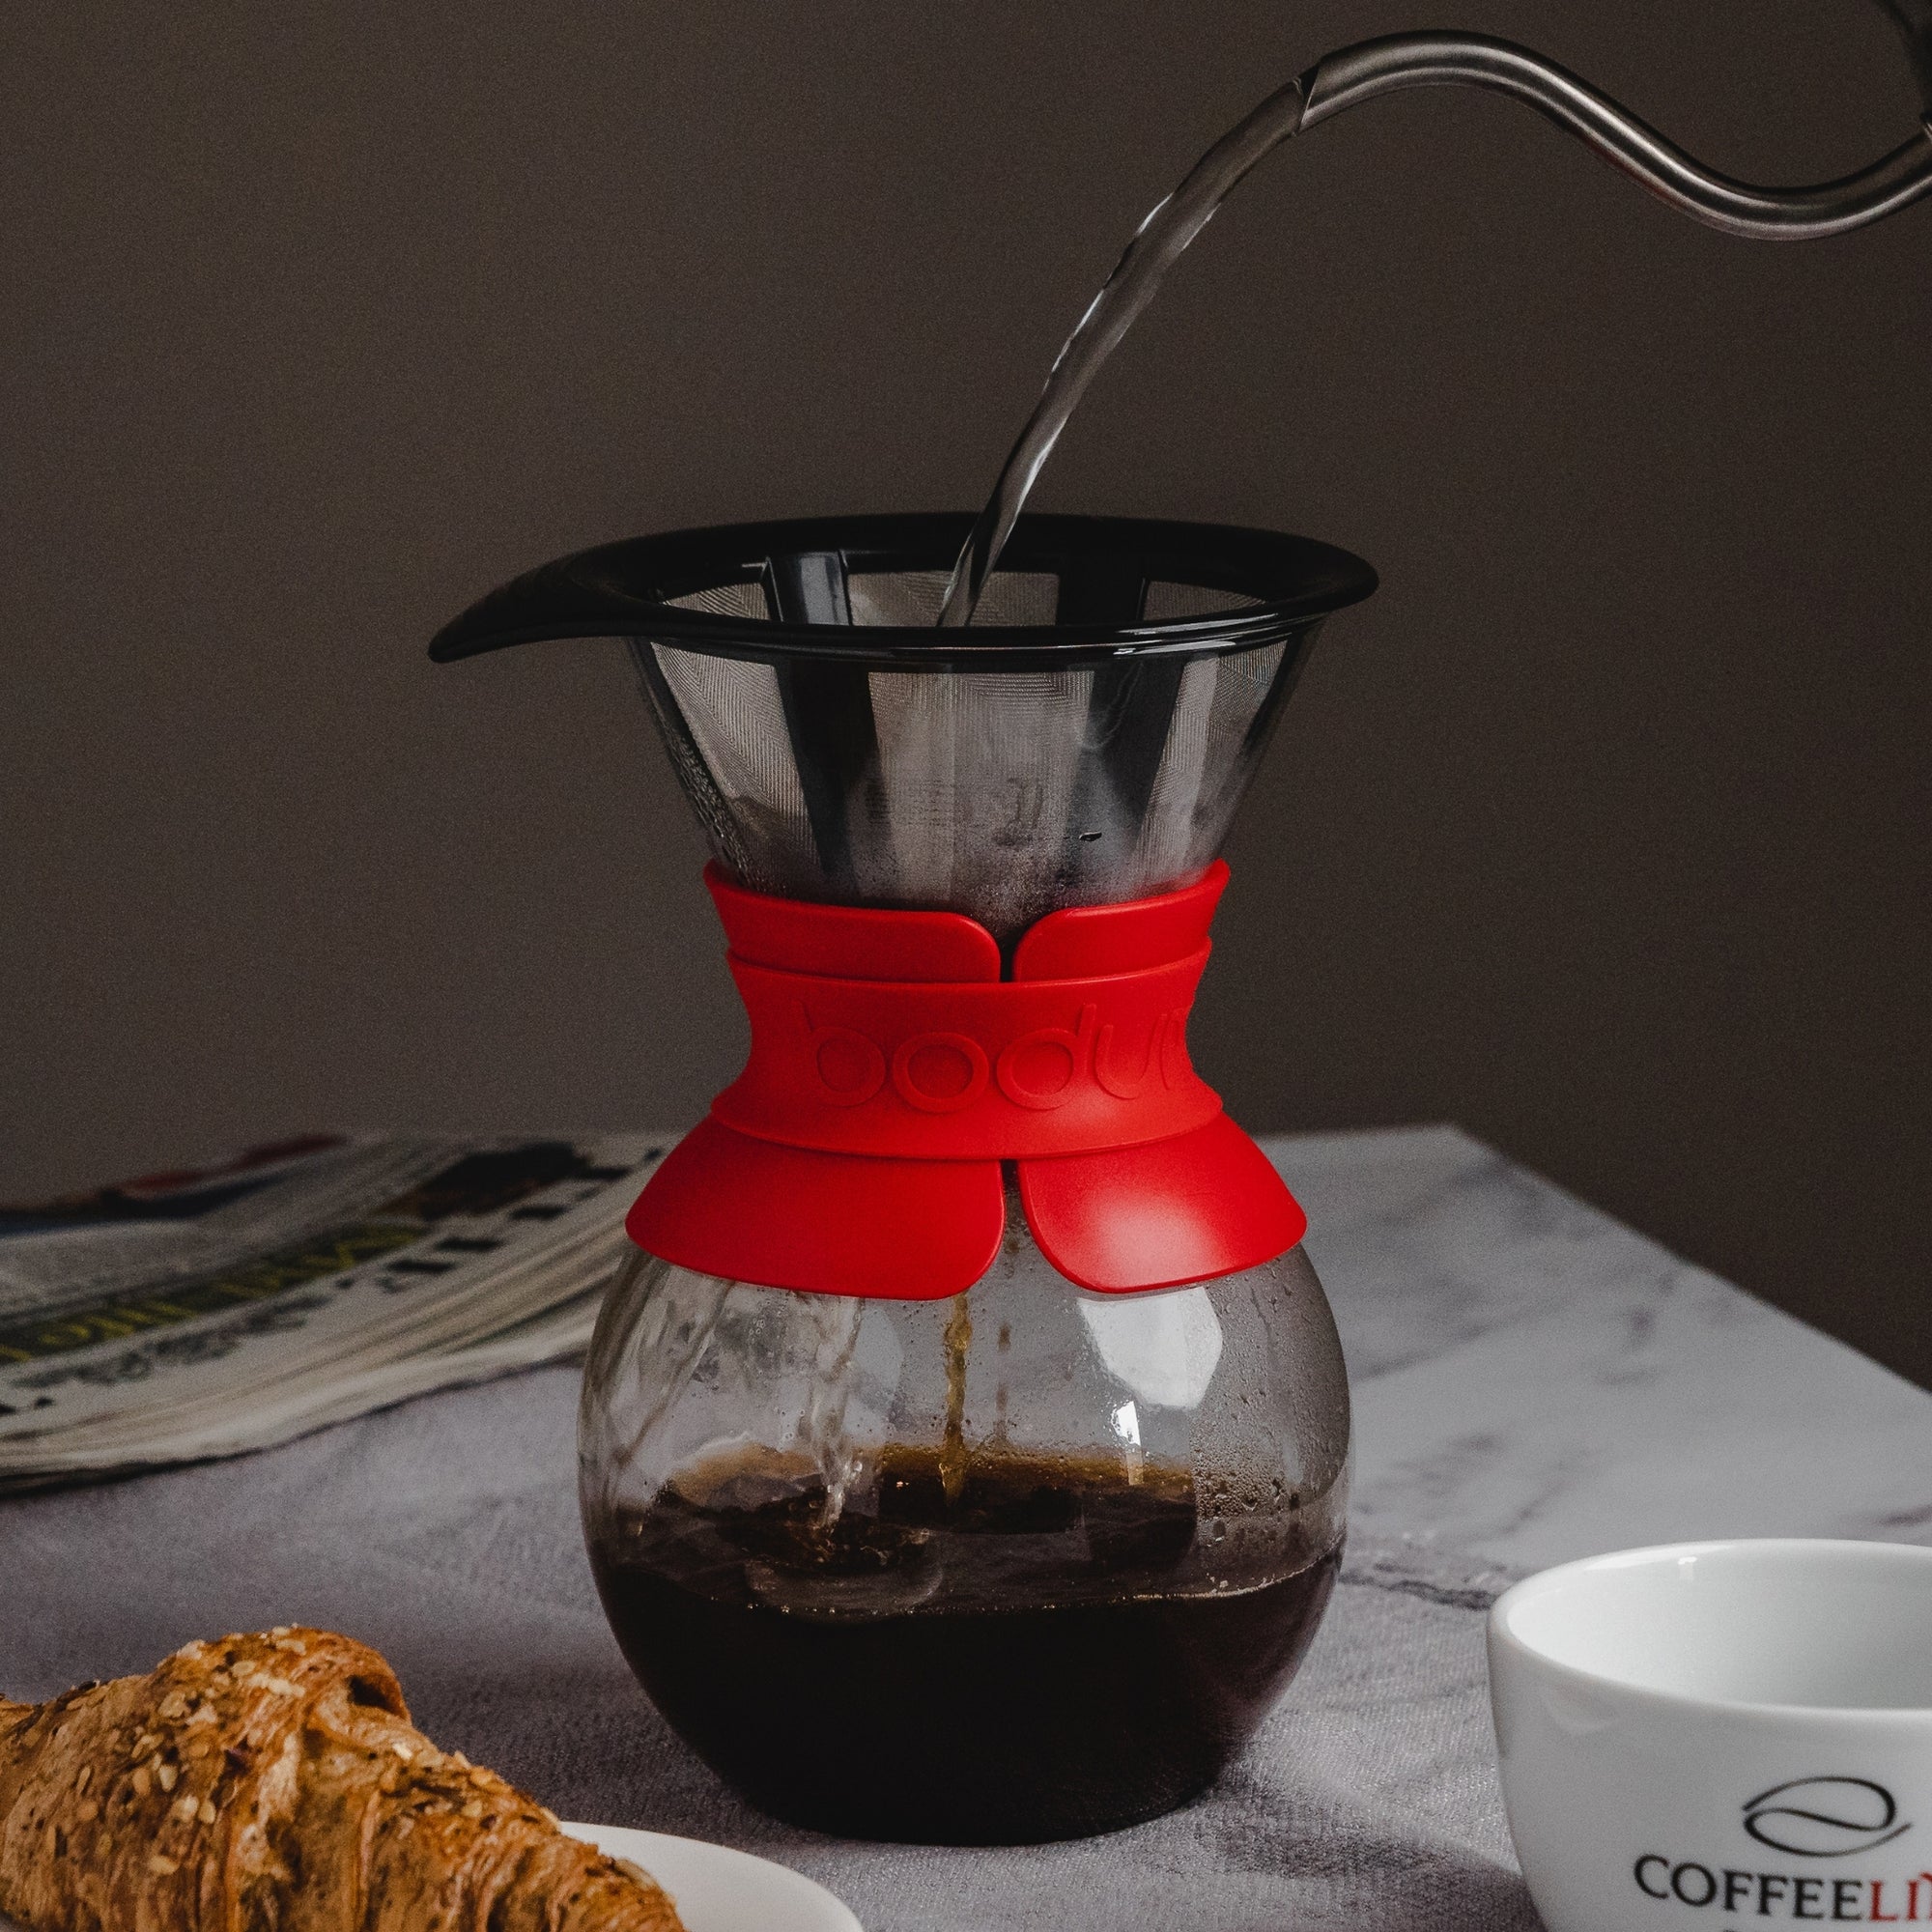 Bodum Chambord Classic French Press Coffee Maker Copper 8 Cup, 1.0